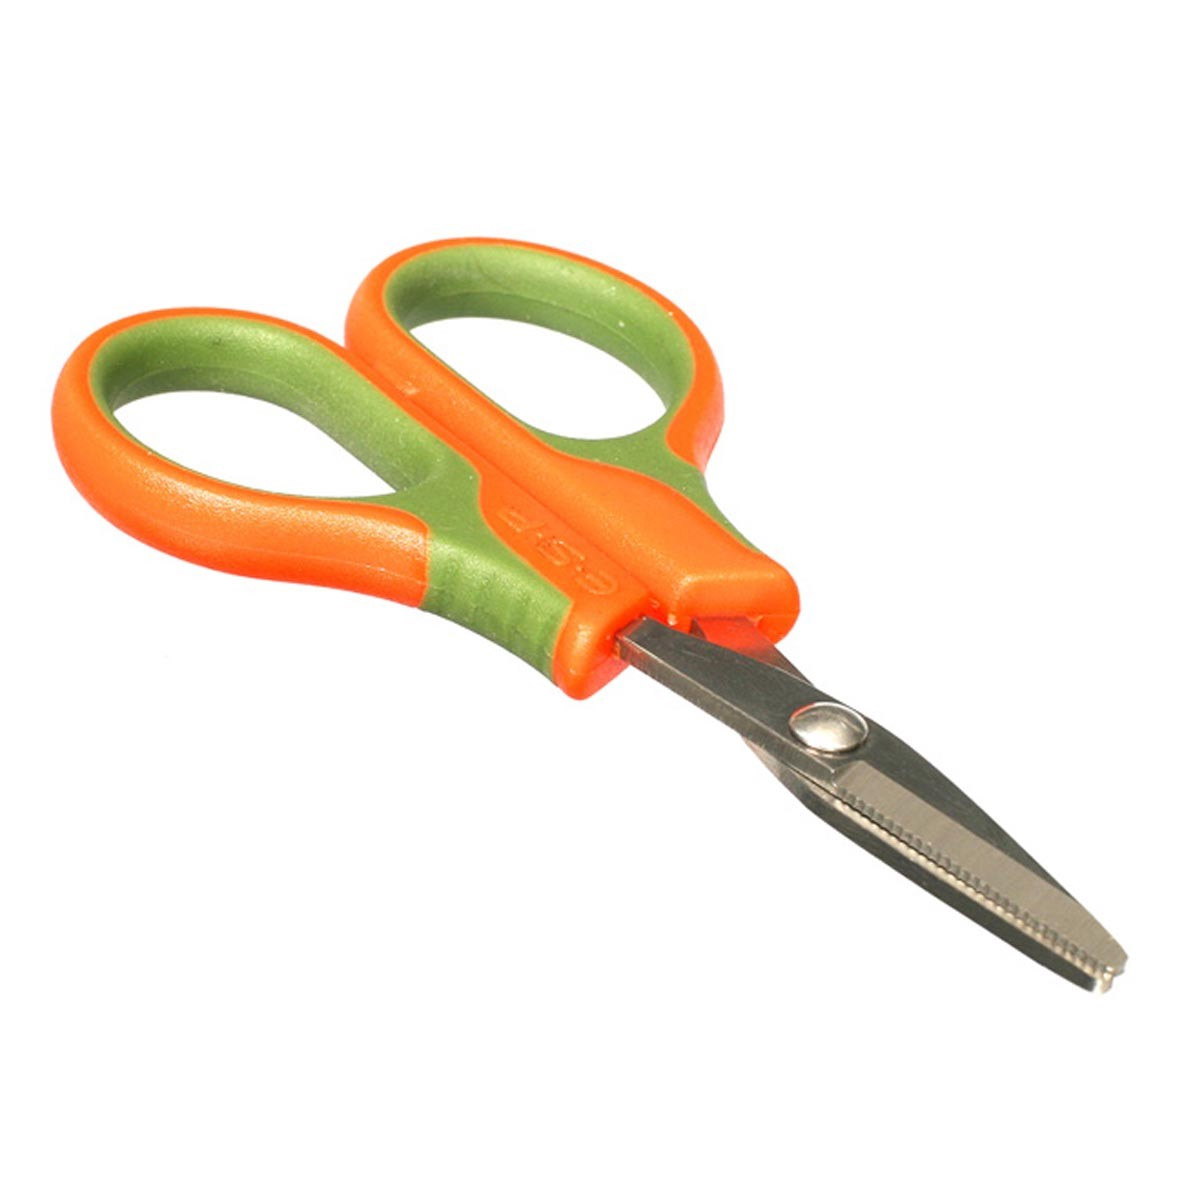 ESP braid scissors